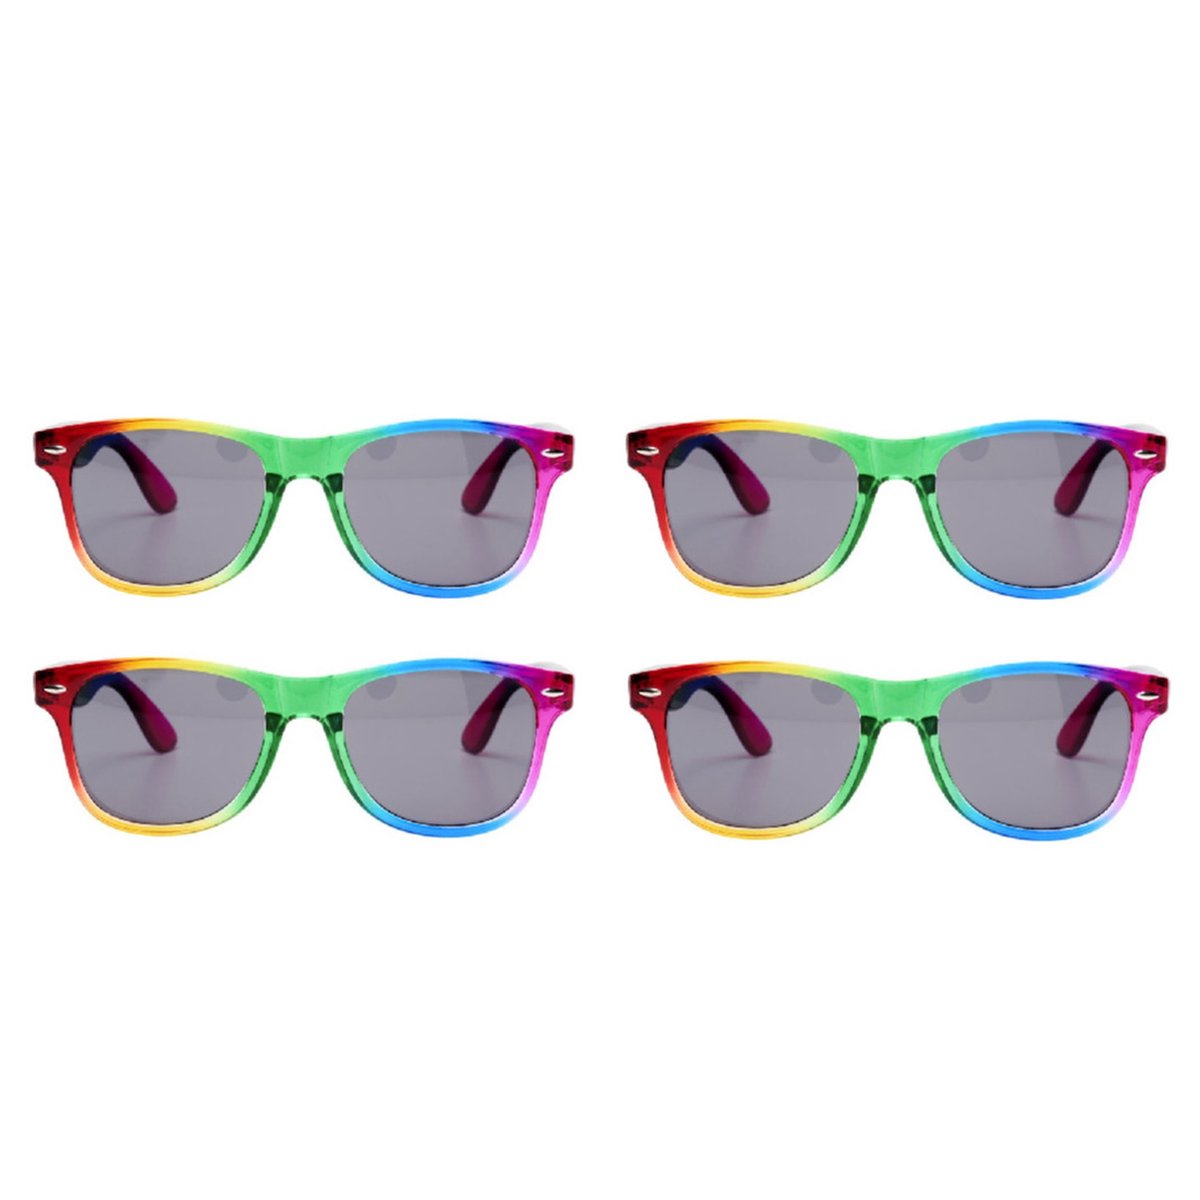 4x Regenboog zonnebrillen retro voor volwassenen - Regenboog zonnebrillen dames/heren